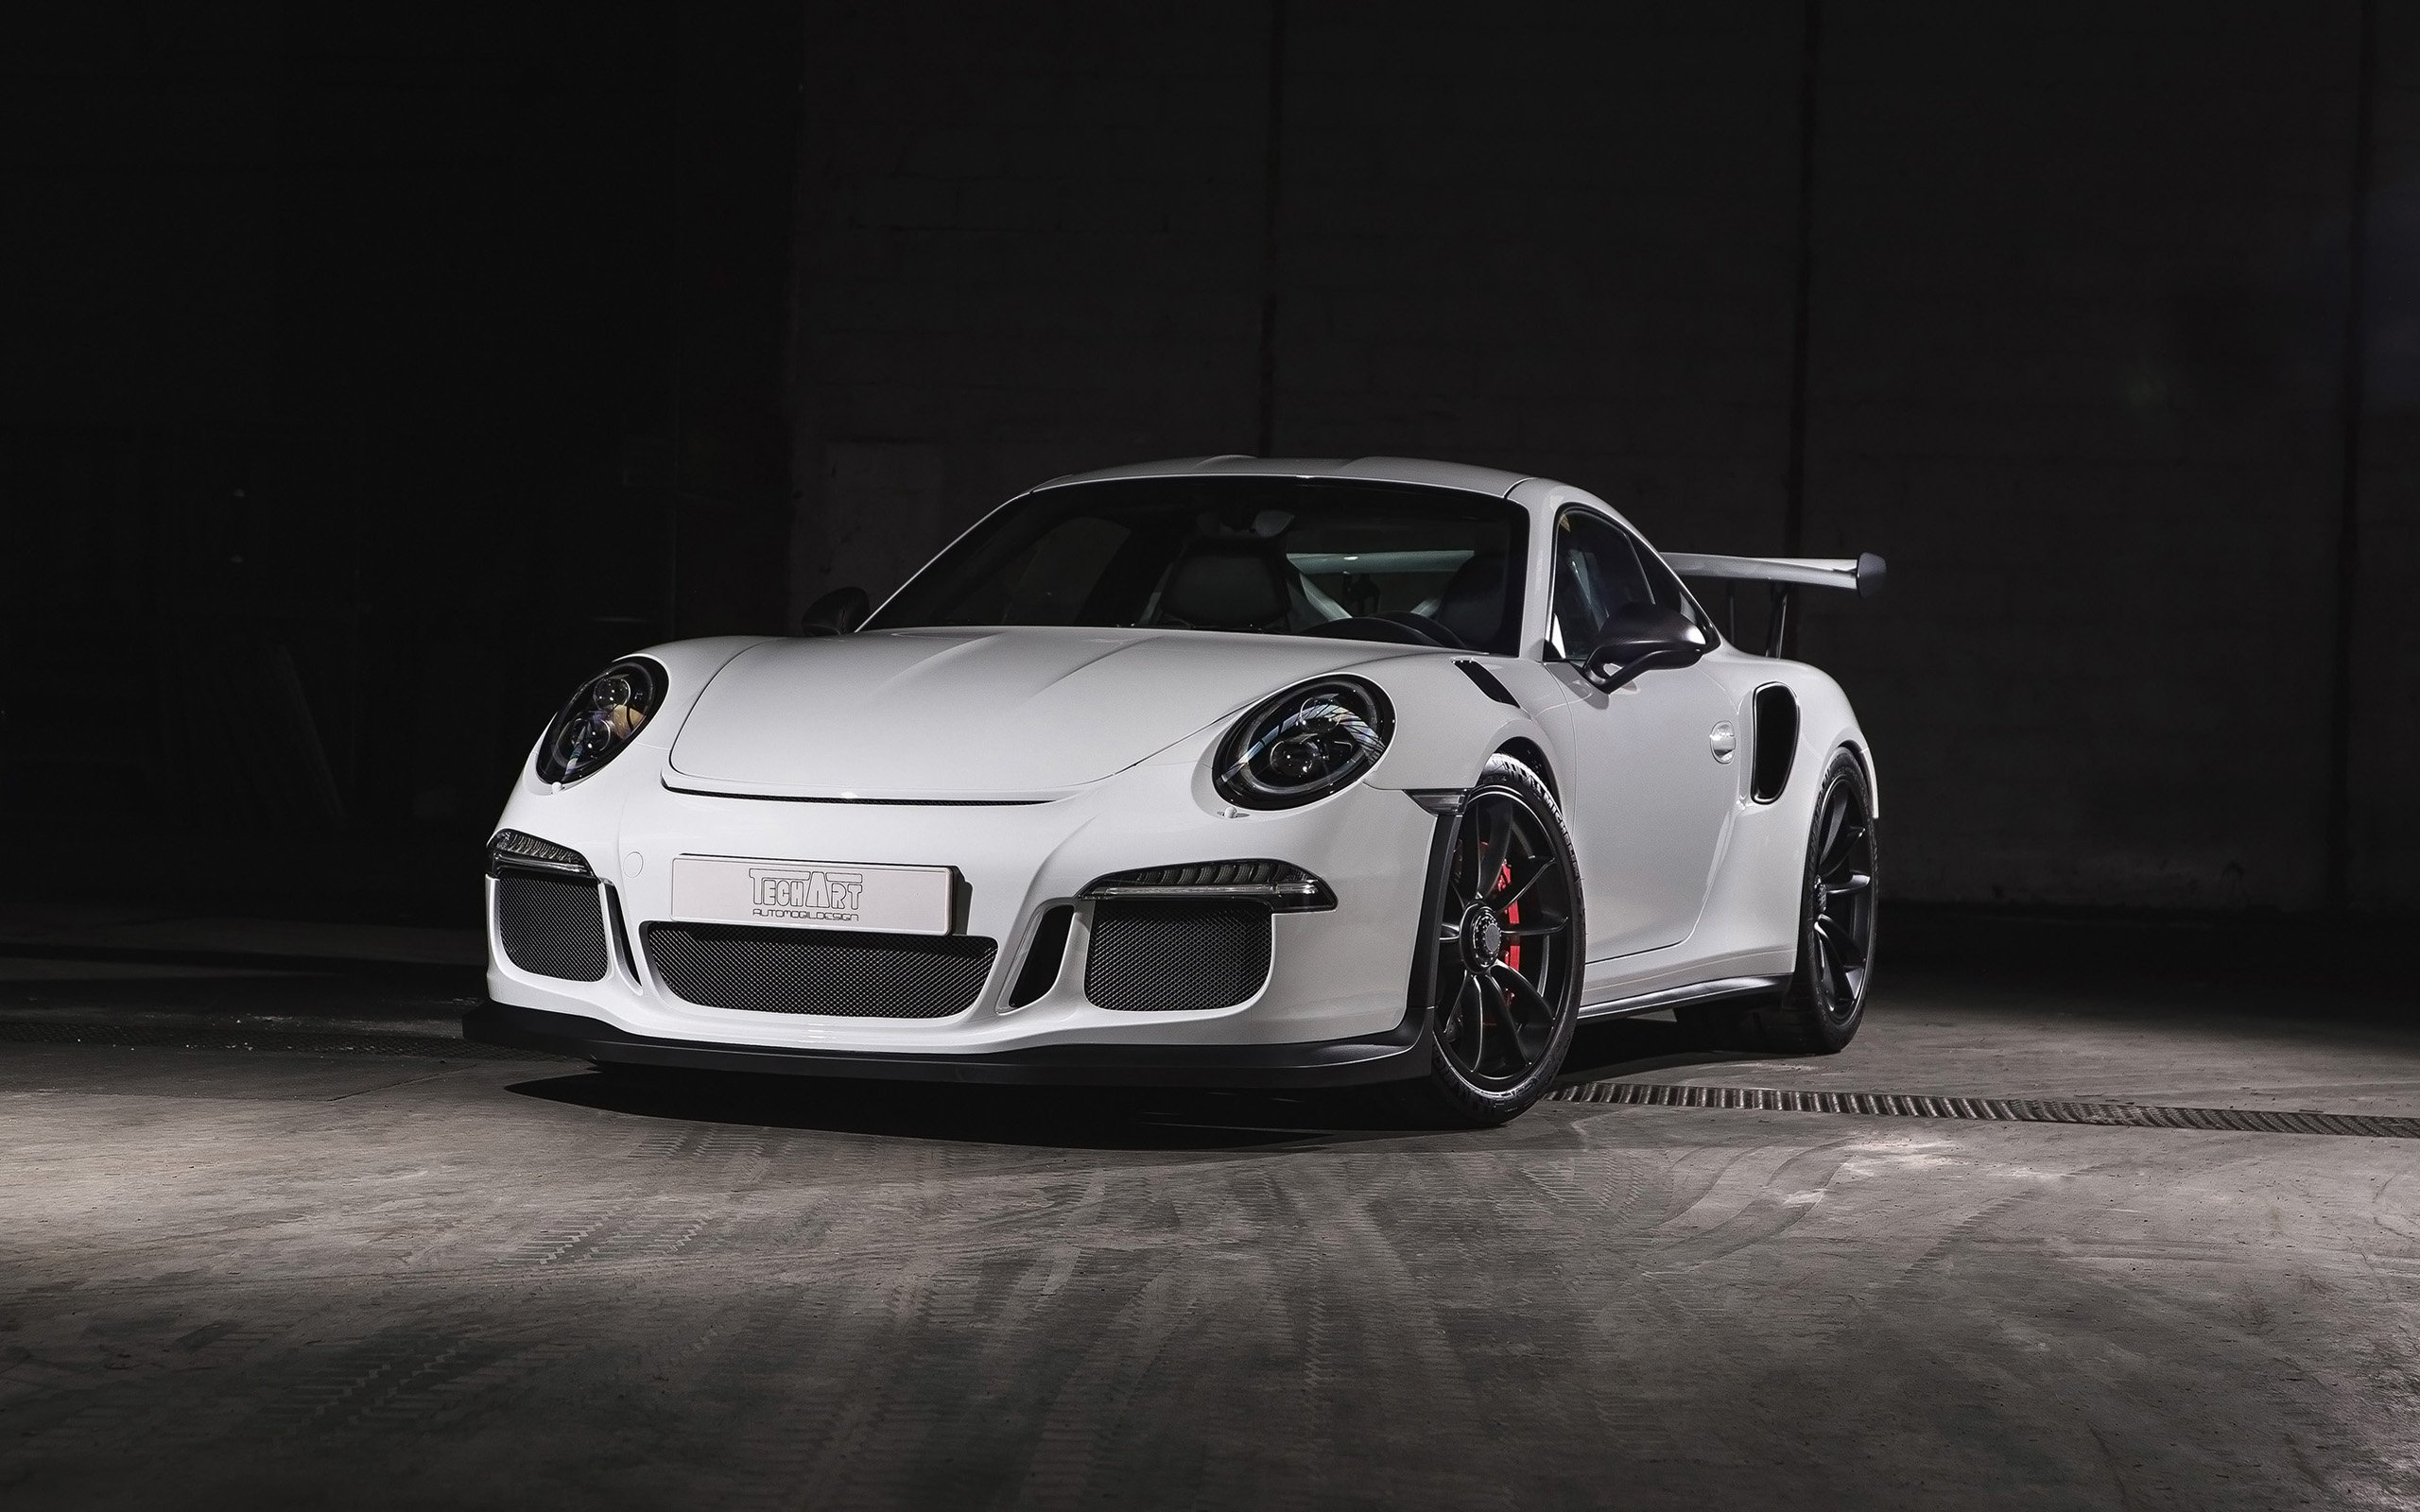 2016, Techart, Porsche, 911, Gt3, R s, Carbon, Sport, Tuning Wallpaper